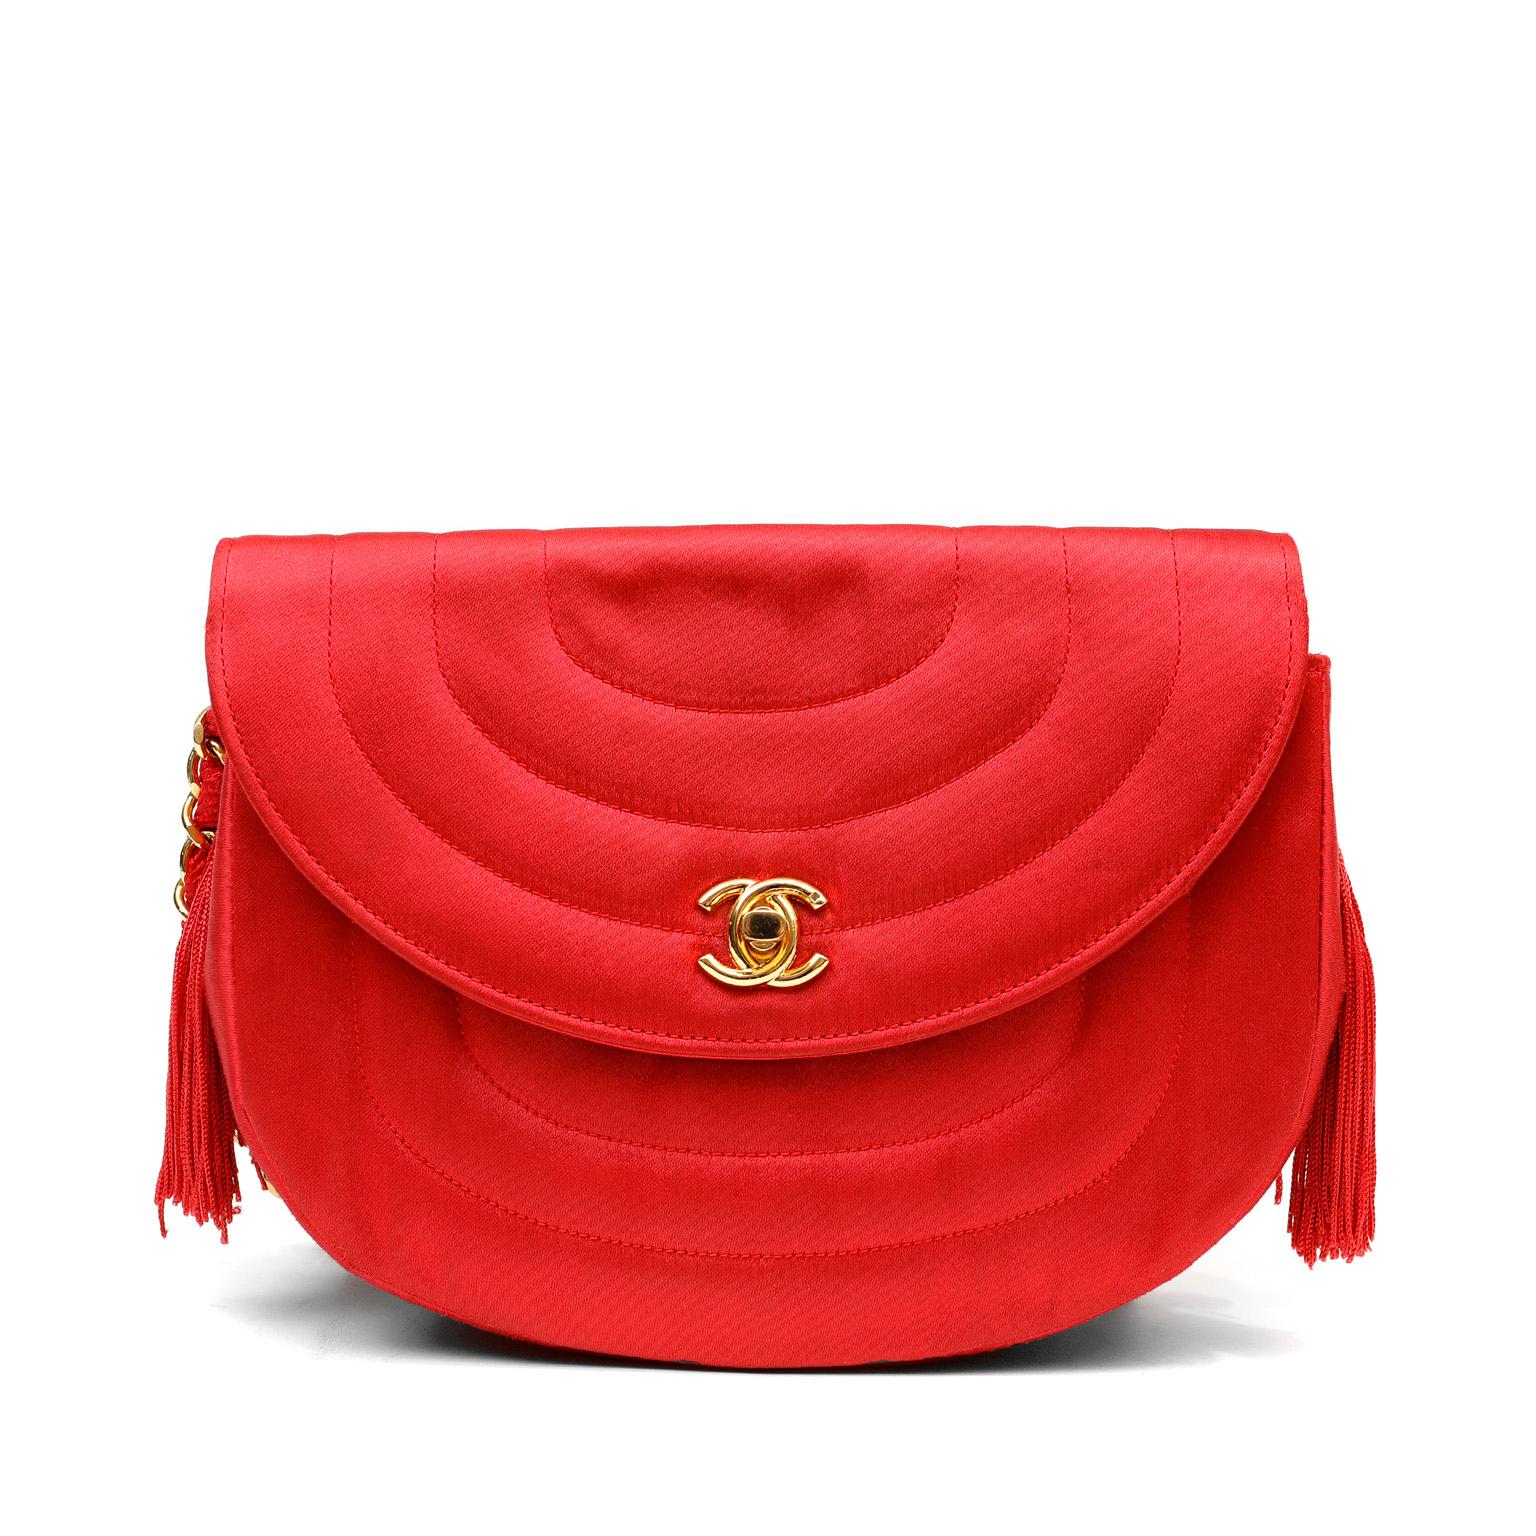 Diese authentische Chanel Red Satin Vintage Abendtasche ist in schönem Zustand.  Diese einzigartig geformte Crossbody-Tasche aus leuchtend rotem Satin ist wirklich wunderschön.  Leuchtend rote Vintage-Tasche aus Satin mit weicher, halbmondförmiger